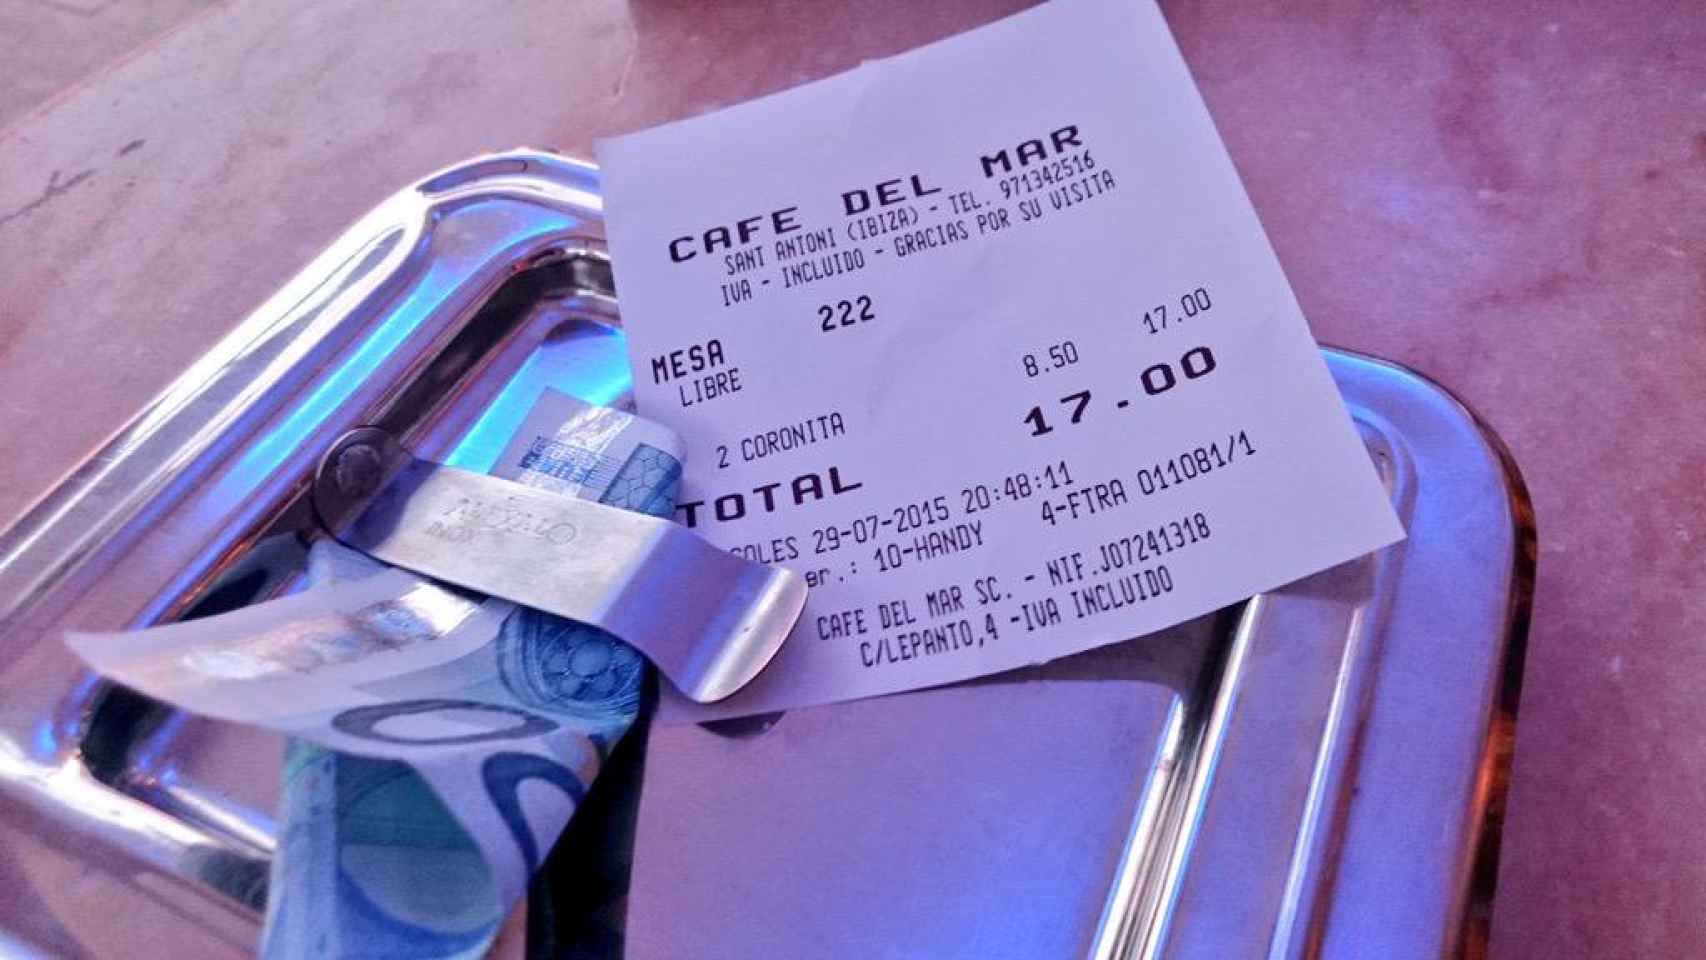 El cliente pagó 17 euros por dos Coronitas en el Café del Mar.